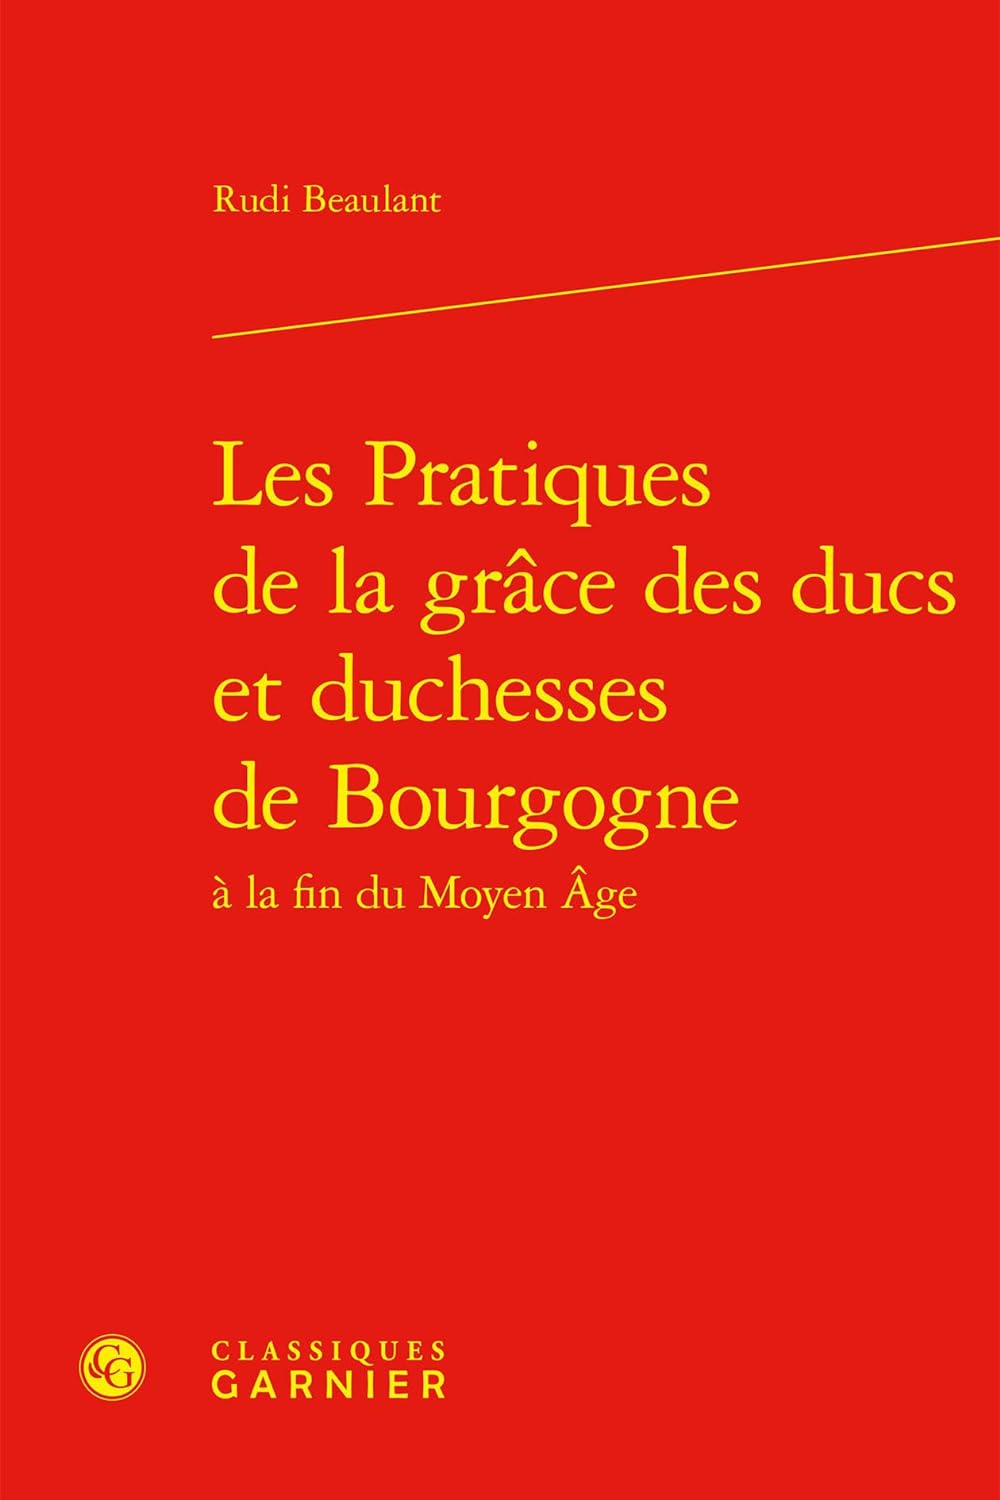 Les Pratiques de la grâce des ducs et duchesses de Bourgogne à la fin du Moyen Âge (Rudi Beaulant)